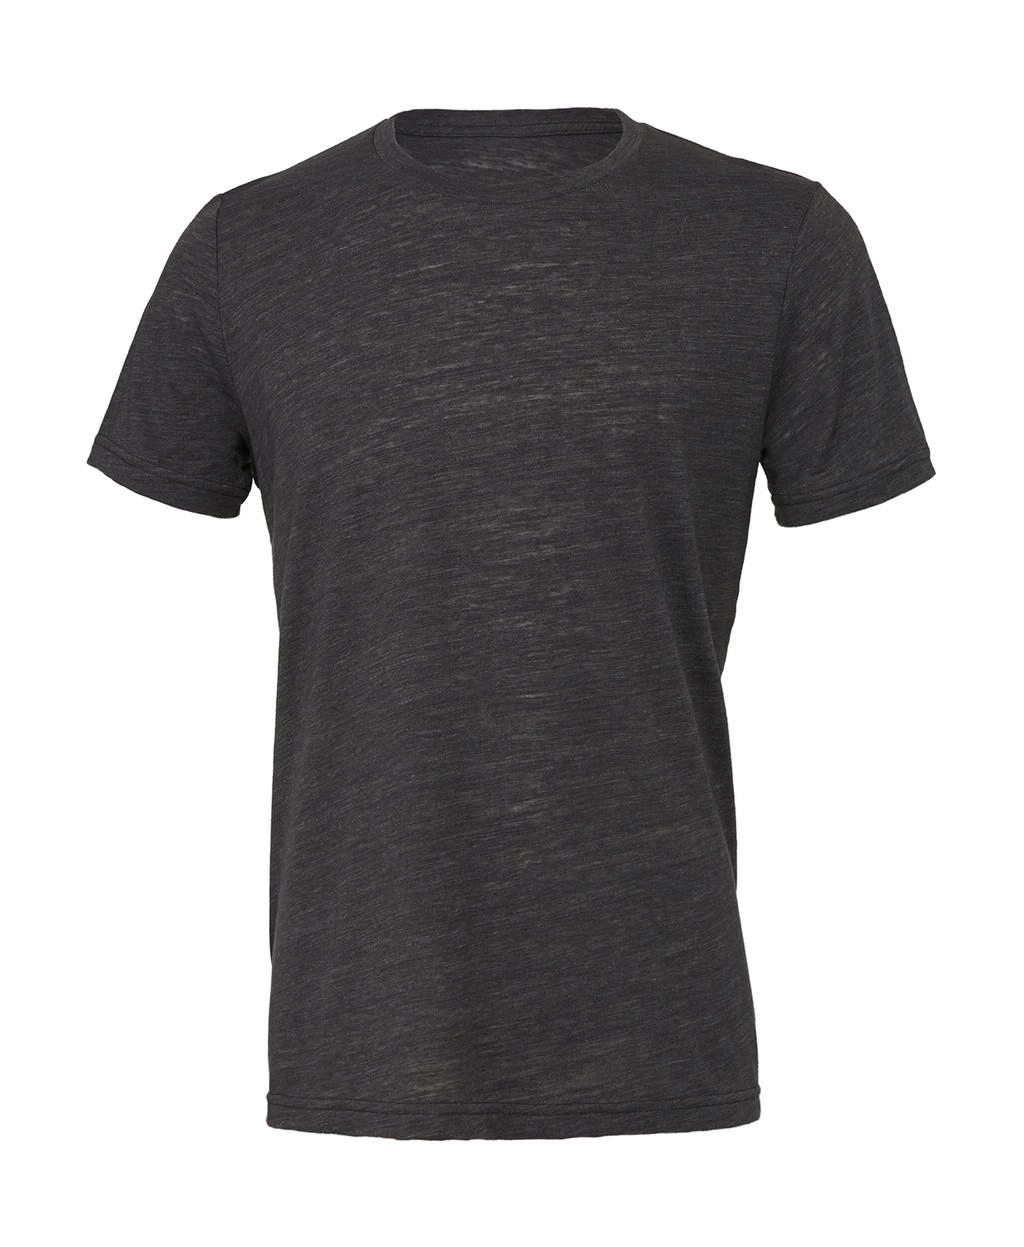 Unisex Poly-Cotton T-Shirt zum Besticken und Bedrucken in der Farbe Charcoal Marble mit Ihren Logo, Schriftzug oder Motiv.